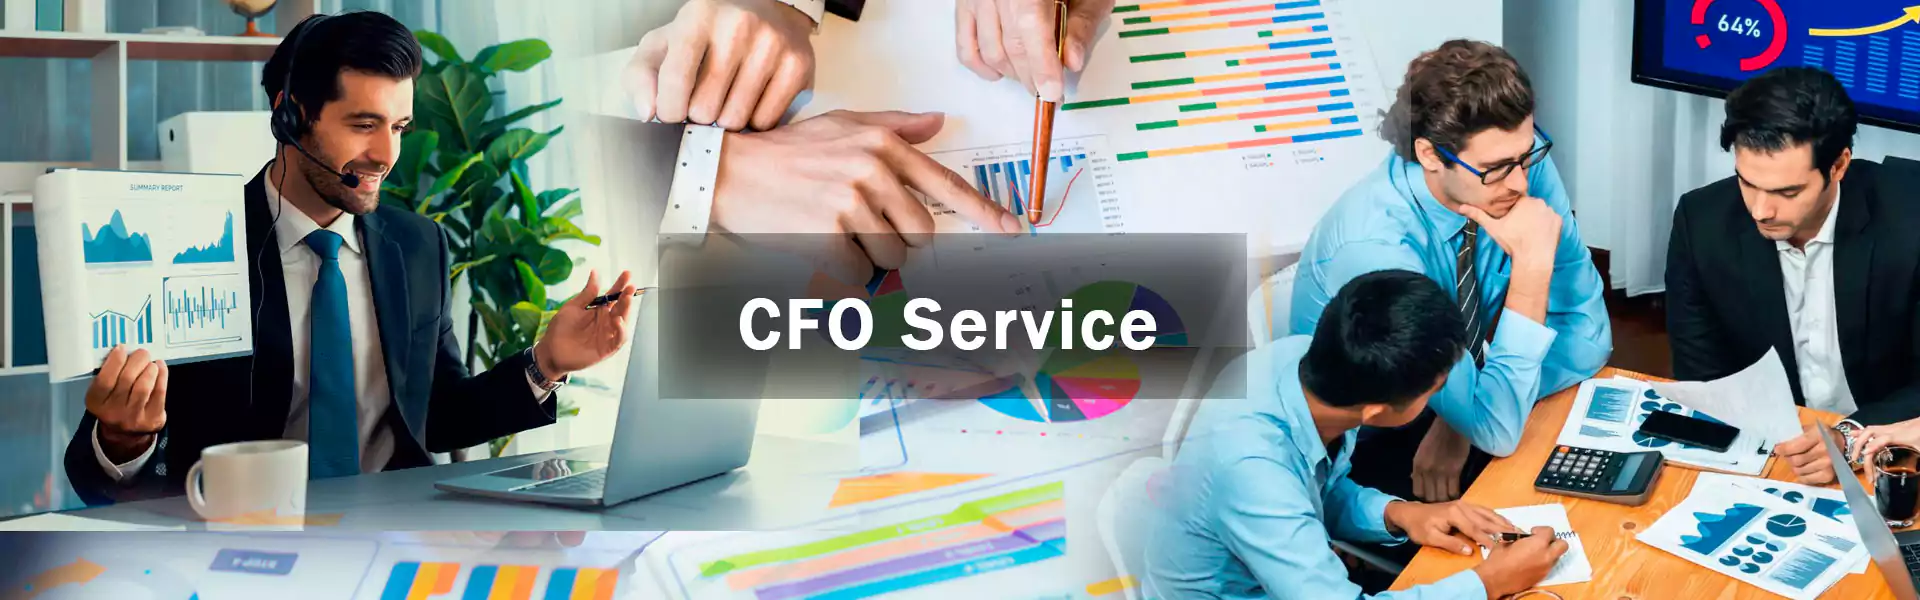 CFO Service